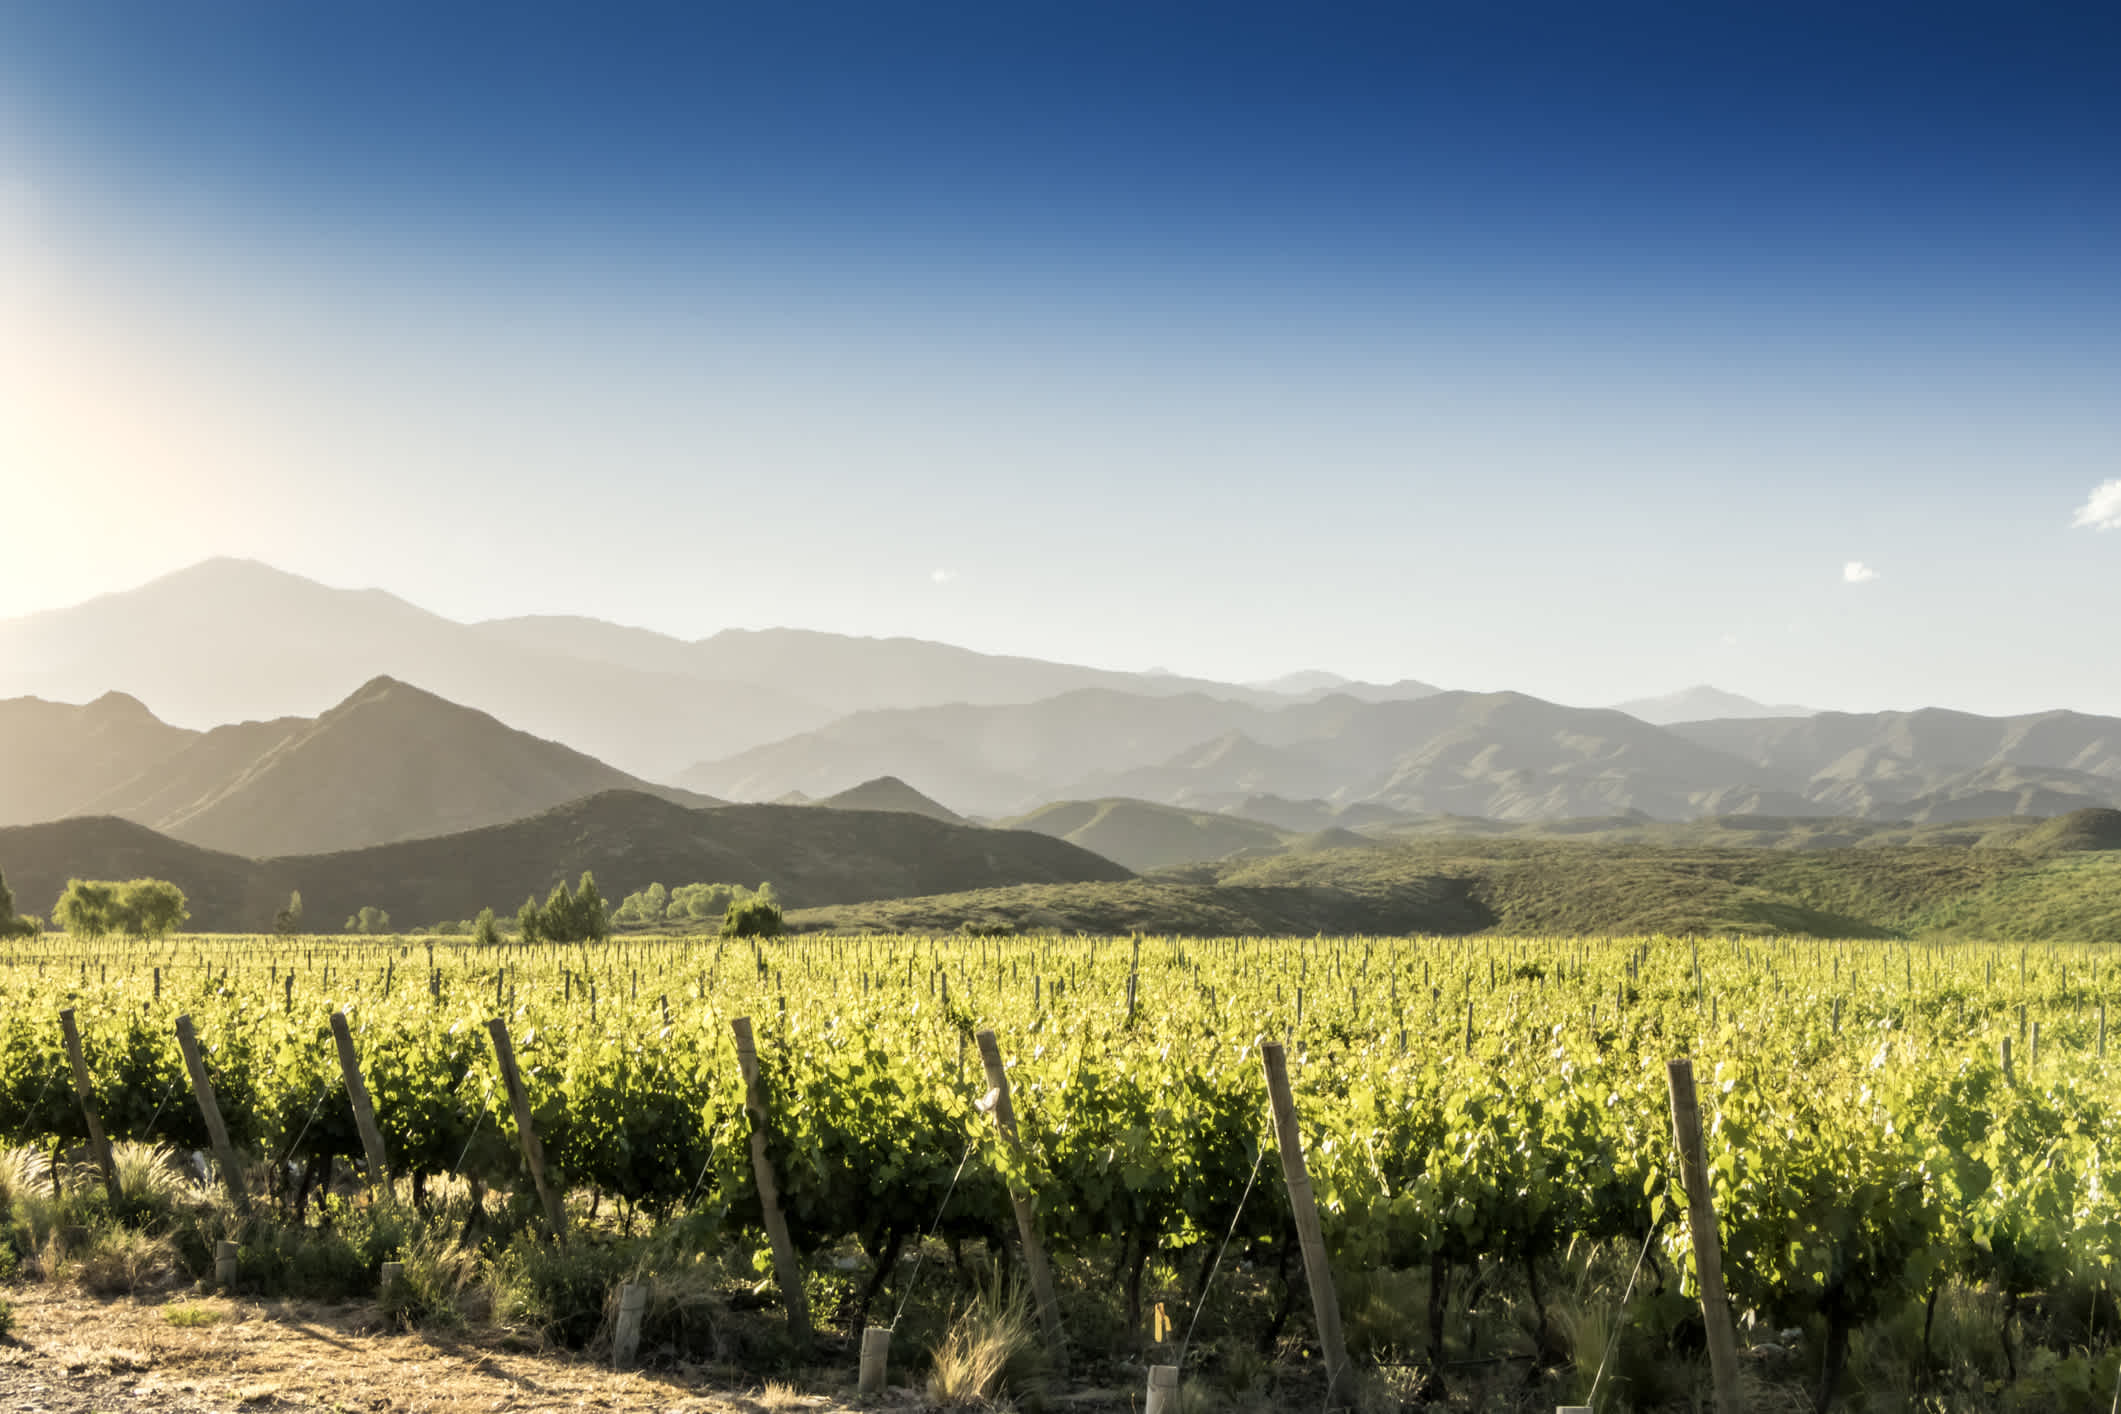 Les magnifiques vignobles de Tunuyin dans la région viticole de Mendoza, Argentine